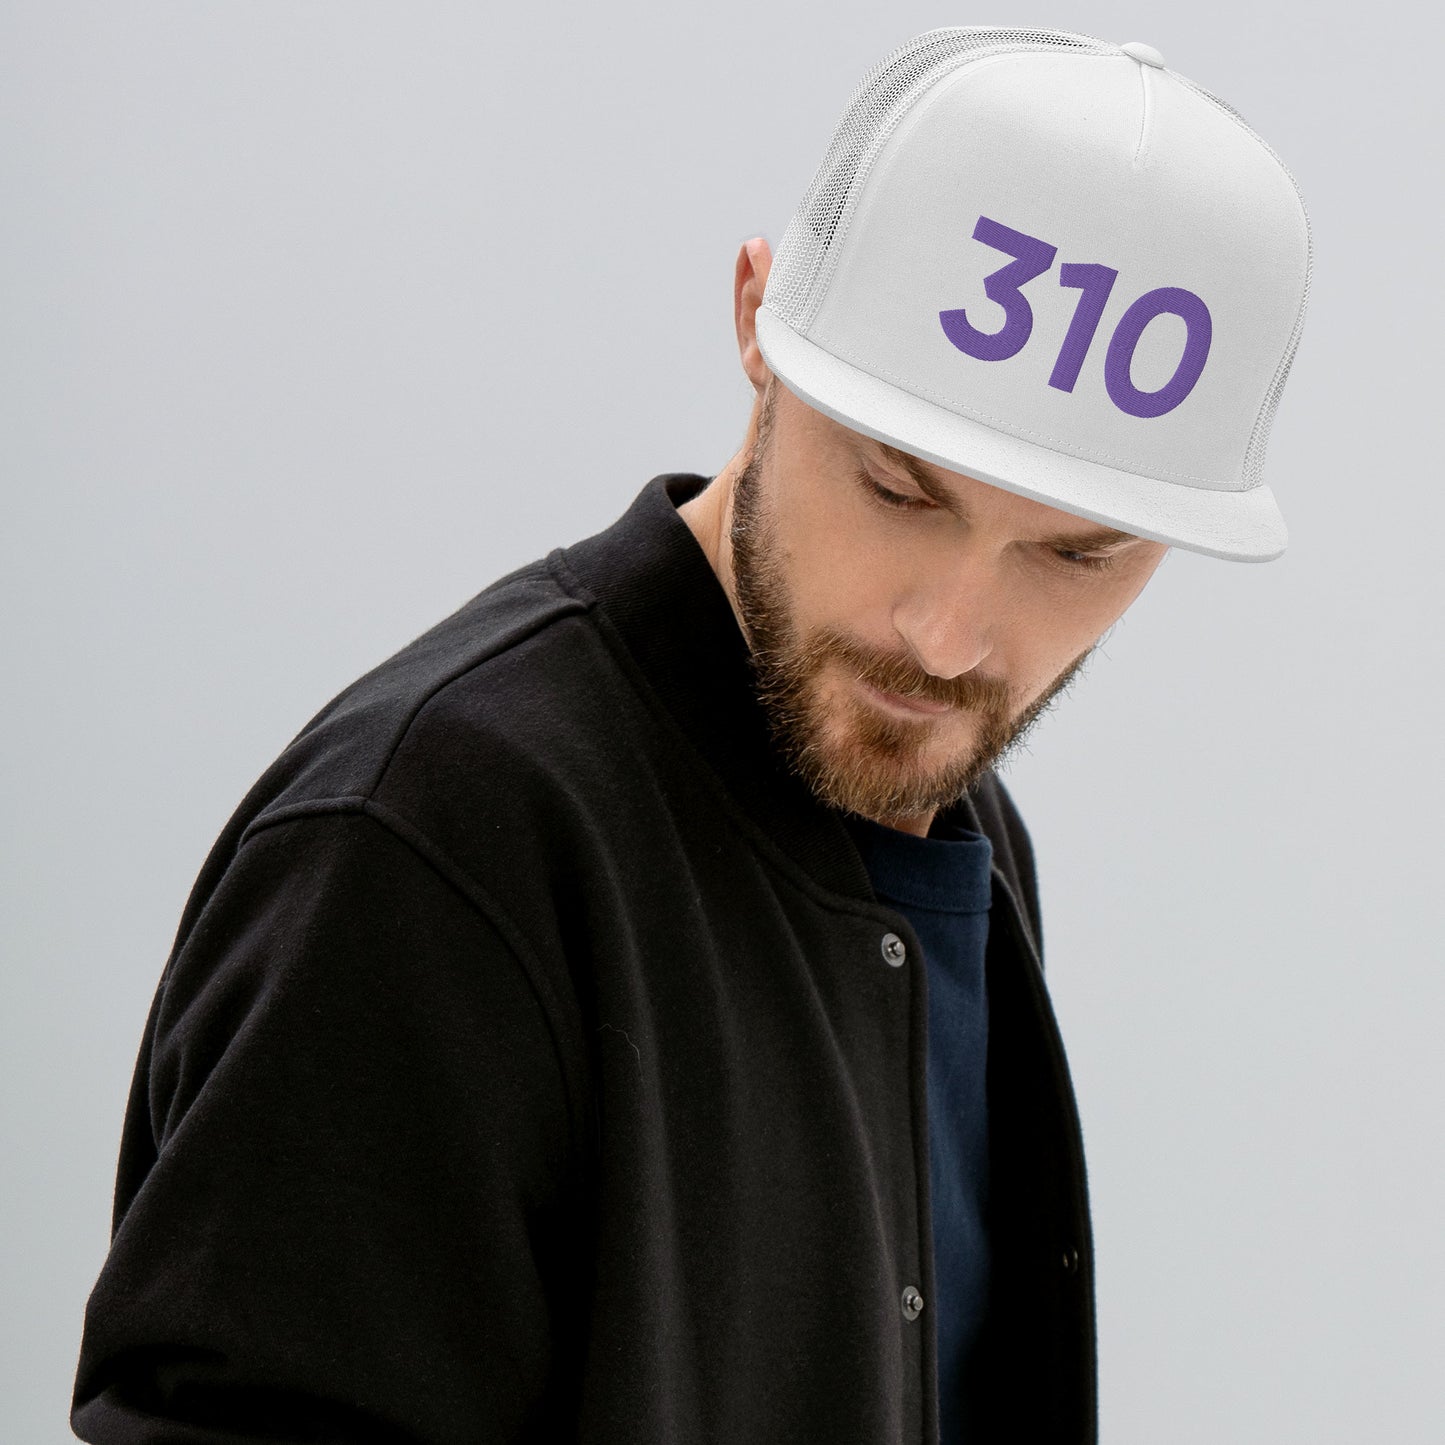 310 LA Purple Trucker Hat